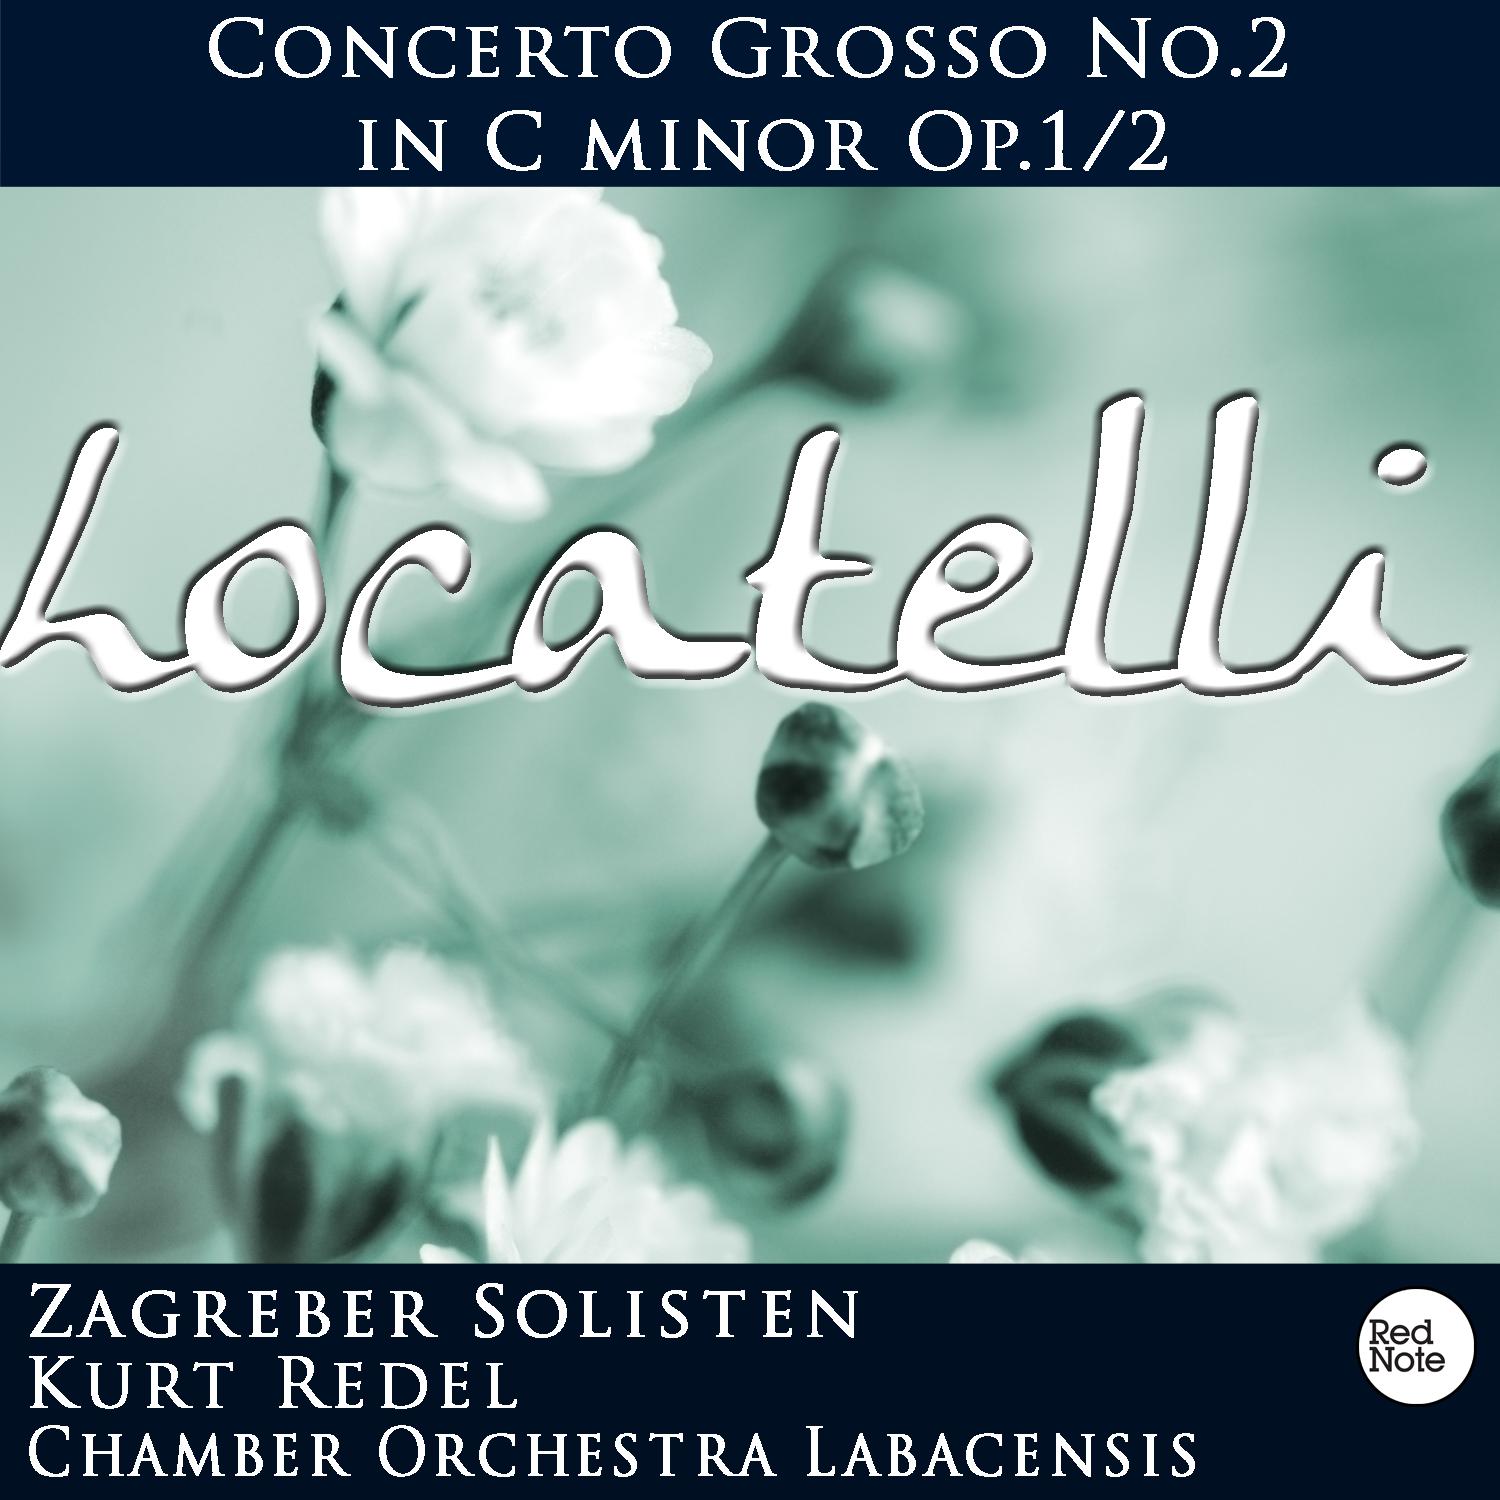 Locatelli: Concerto Grosso No.2 in C minor Op.1/2